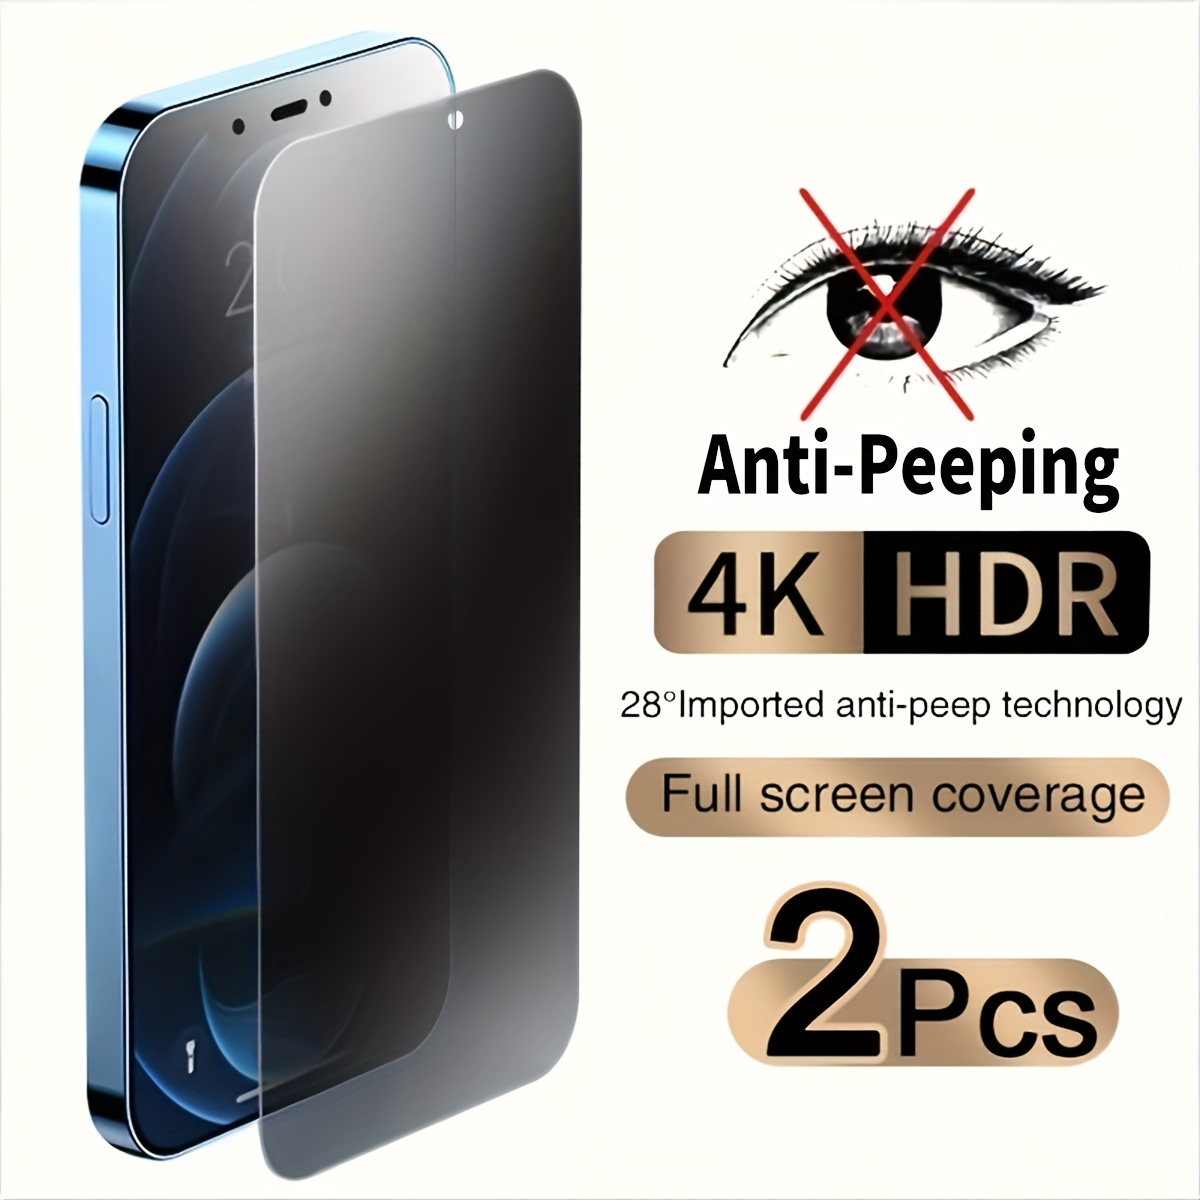 Acheter Protection d'écran pour iPhone 11 - Anti-espion